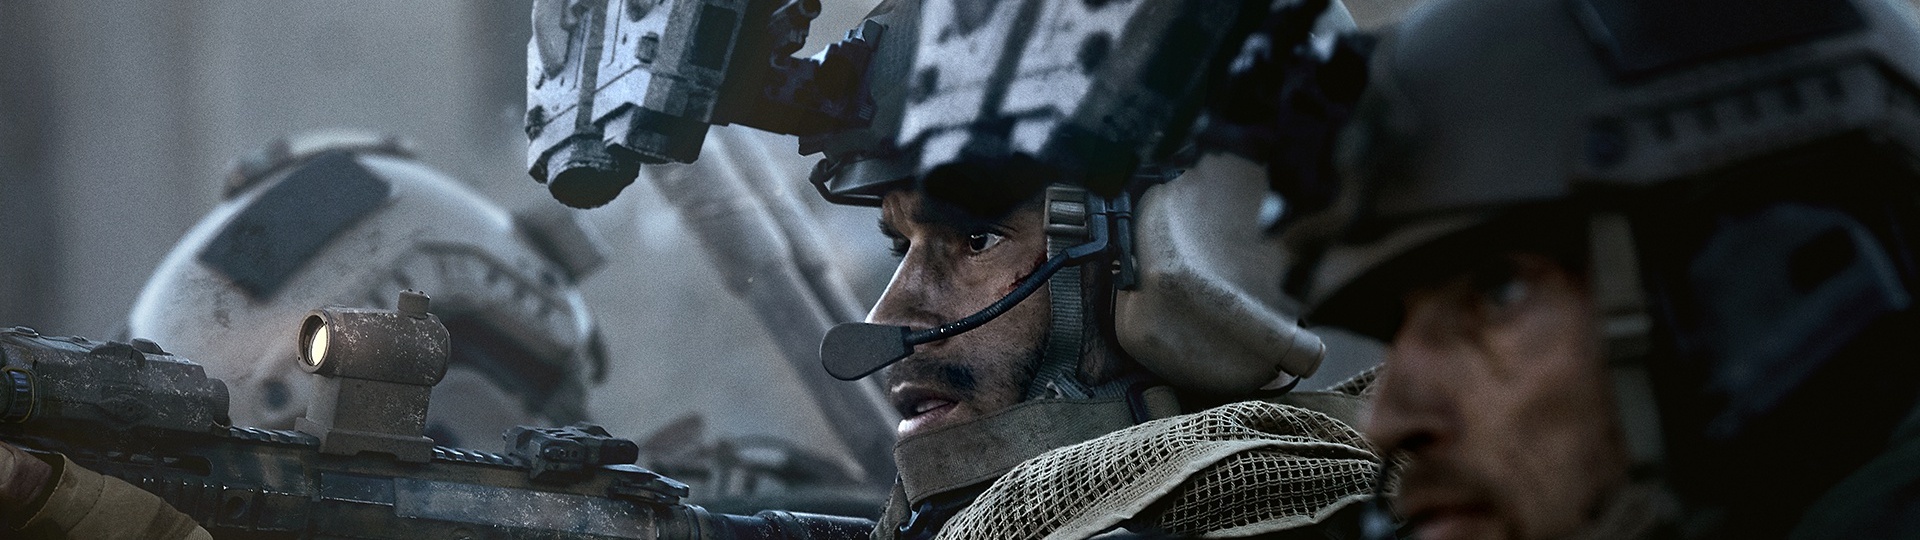 Spekulace o novém Call of Duty se začínají množit | Spekulace